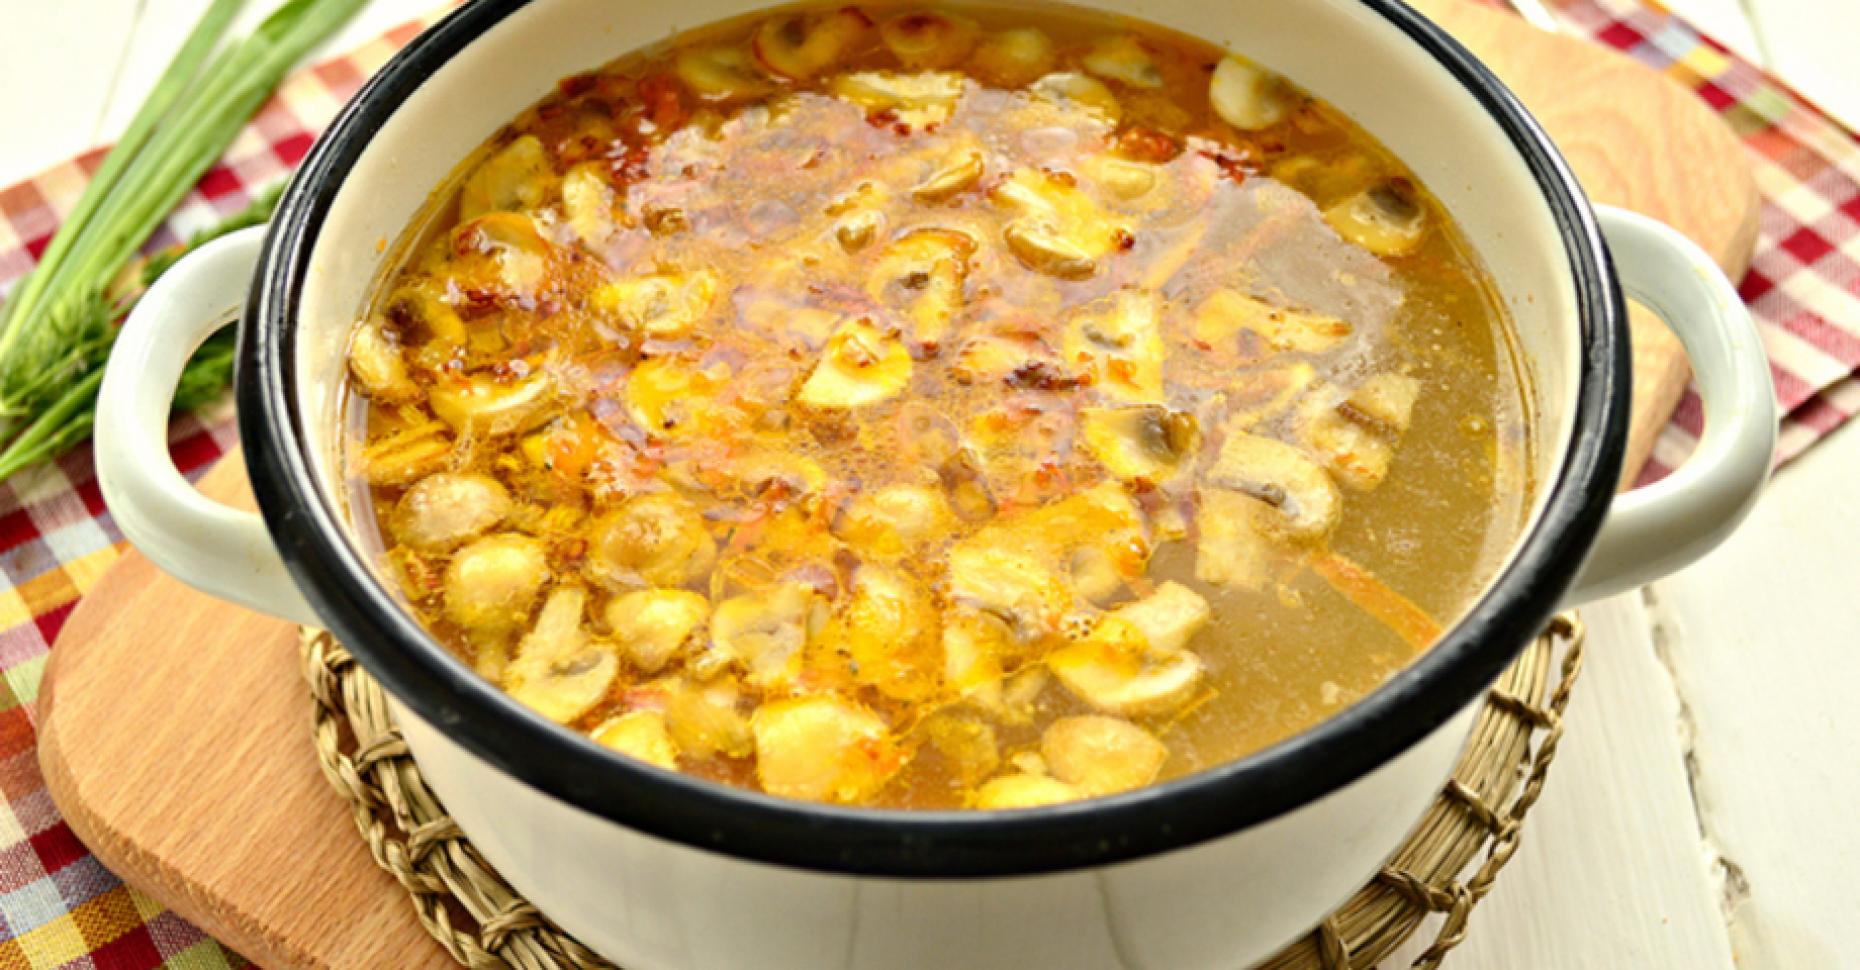 Суп на говяжьем бульоне рецепт с фото вкусный пошагово